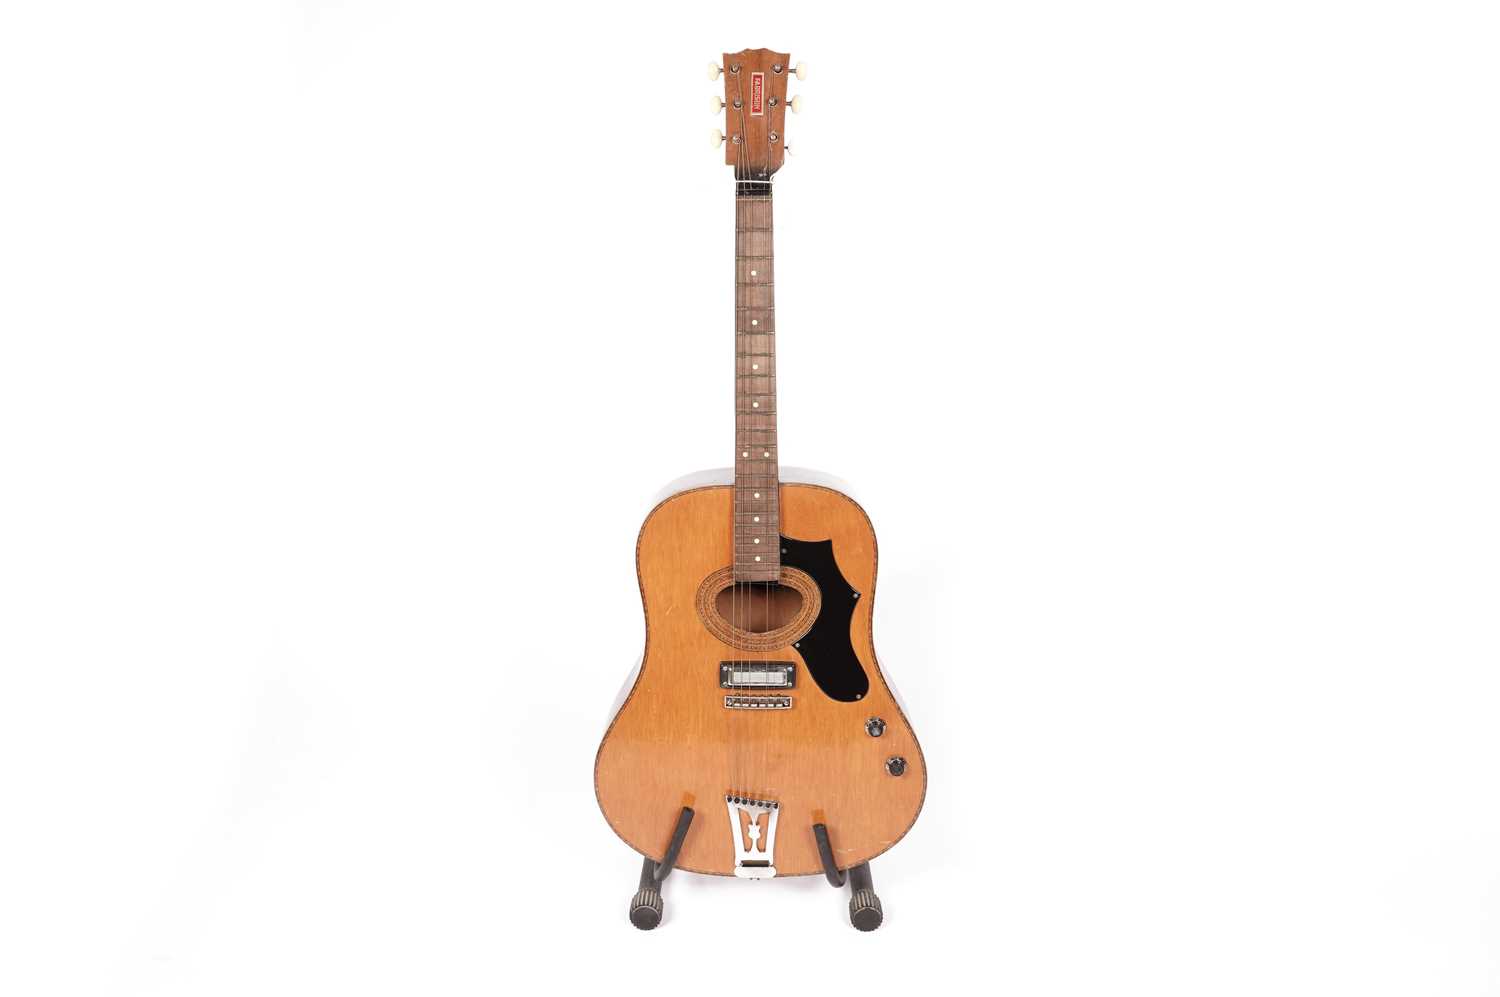 A Fabrison electro-acoustic guitar